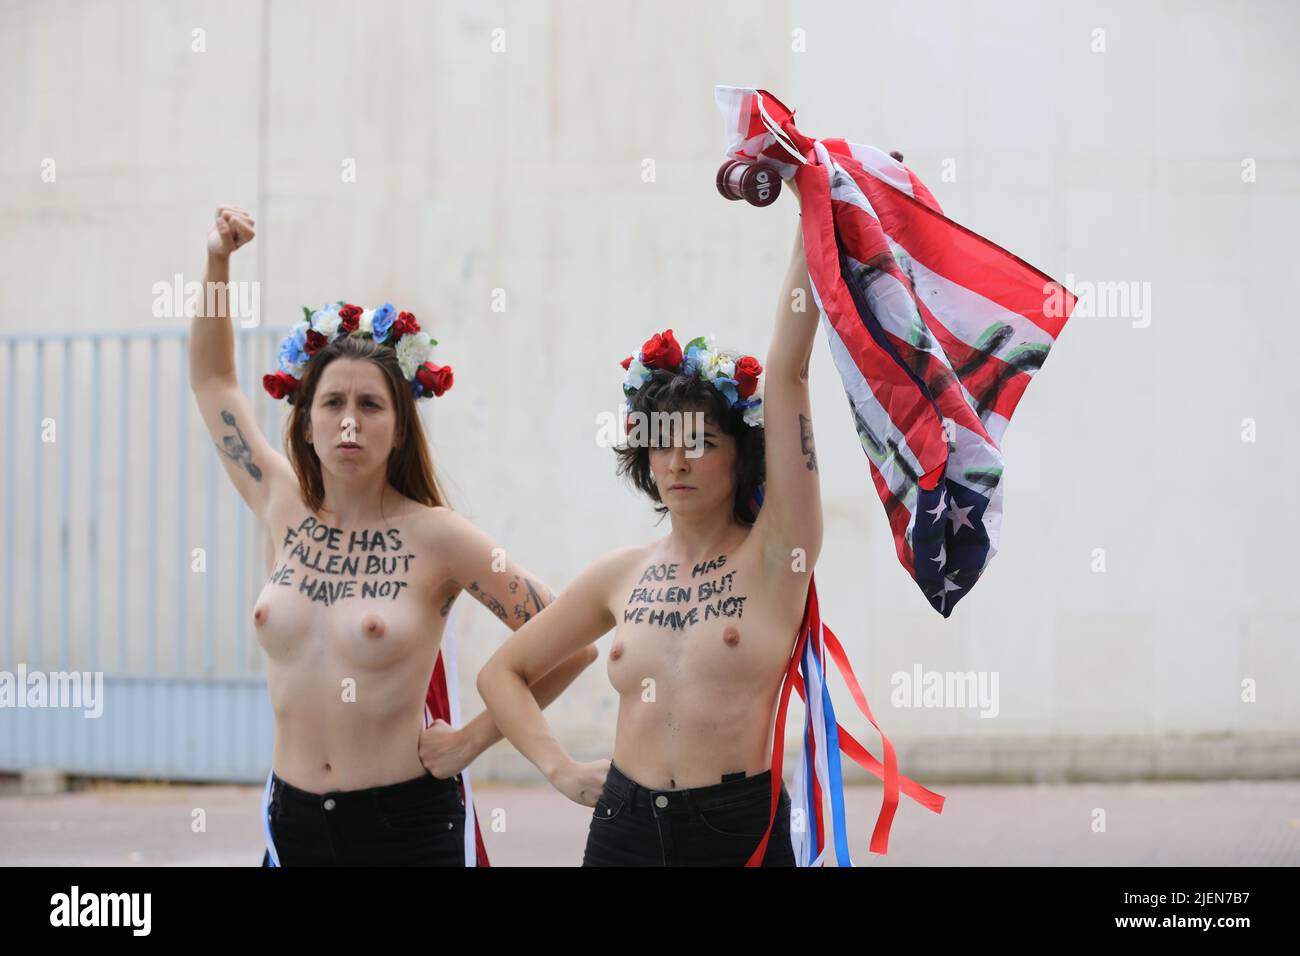 Madrid, España. 27th de junio de 2022. Miembros del grupo activista de mujeres Femen protestan con una pancarta que dice 'El aborto es sagrado' frente a la embajada de Estados Unidos en Madrid, España, el 27 de junio de 2022, tras la decisión de la Corte Suprema de Estados Unidos de poner fin al derecho constitucional al aborto. Crédito: Isabel Infantes/Alamy Live News Foto de stock